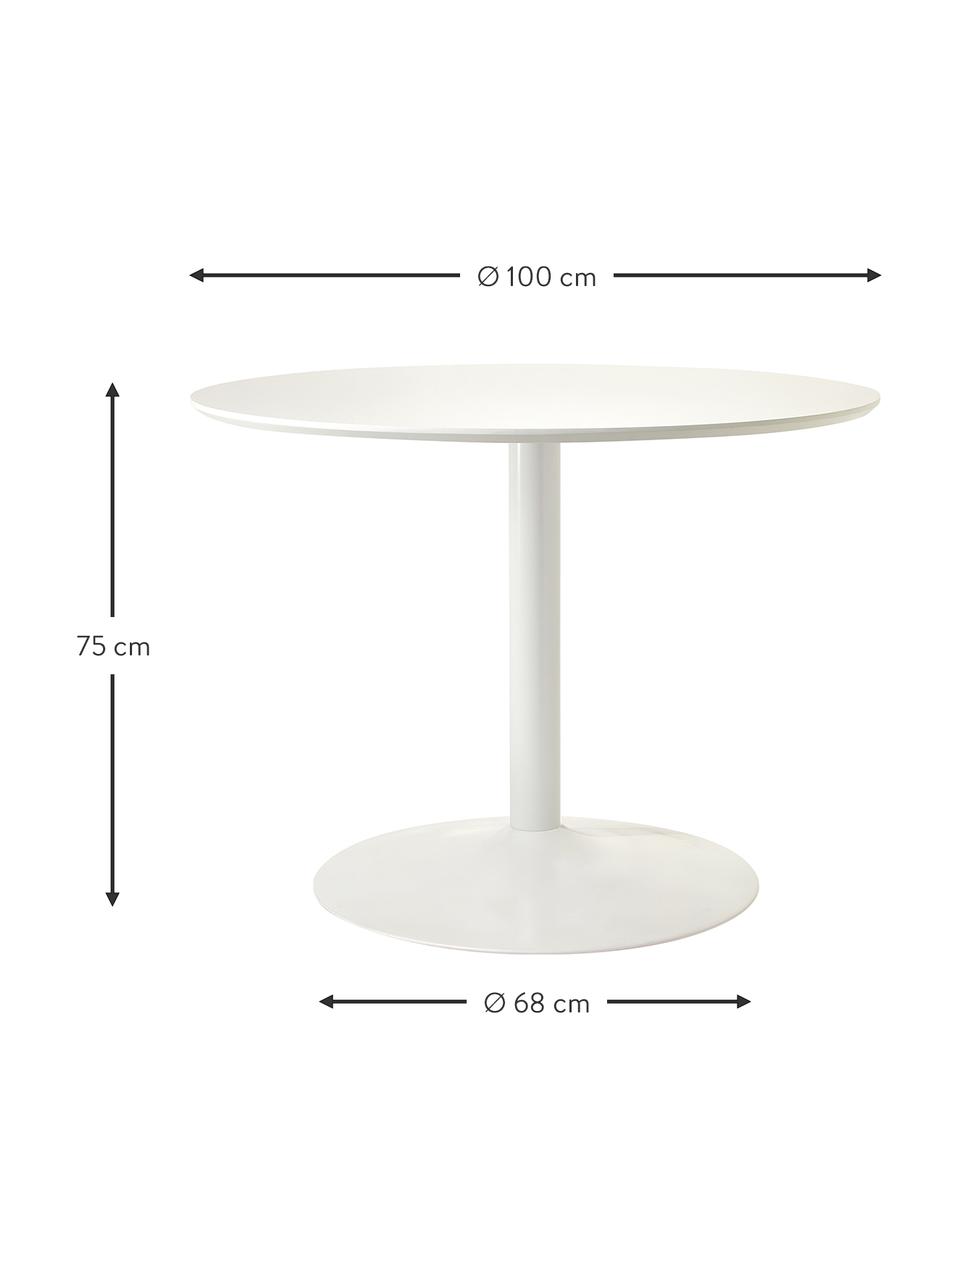 Kulatý jídelní stůl Menorca, Ø 100 cm, Bílá, Ø 100 cm, V 75 cm